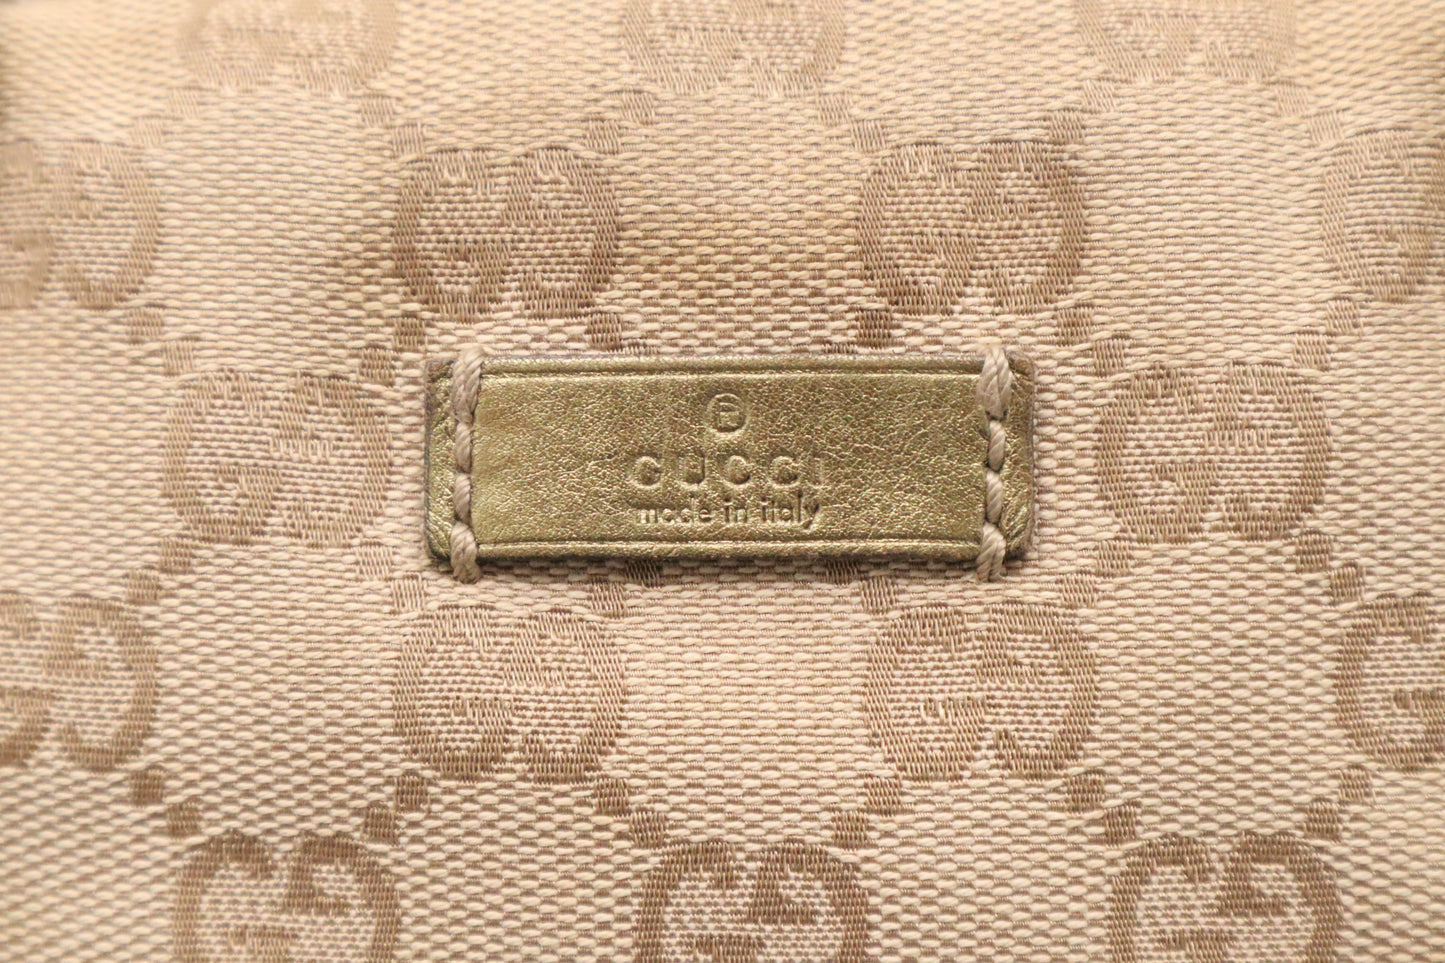 Gucci Handbag in GG Canvas